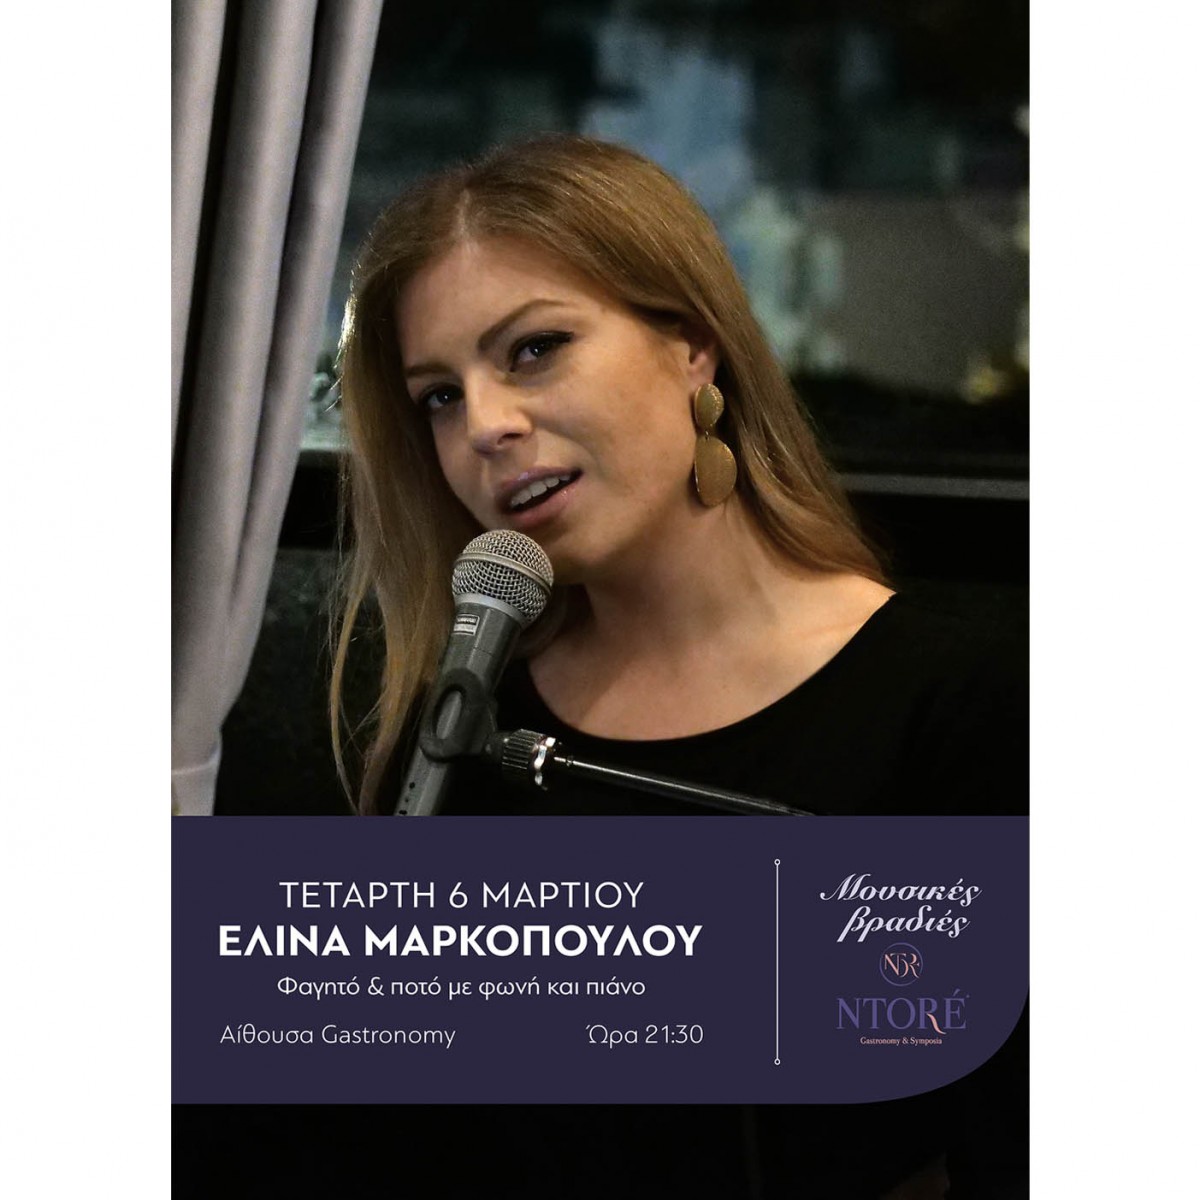 Φαγητό και ποτό με την Ελίνα Μαρκοπούλου στη φωνή και το πιάνο, Τετάρτη 6 Μαρτίου, 21:30